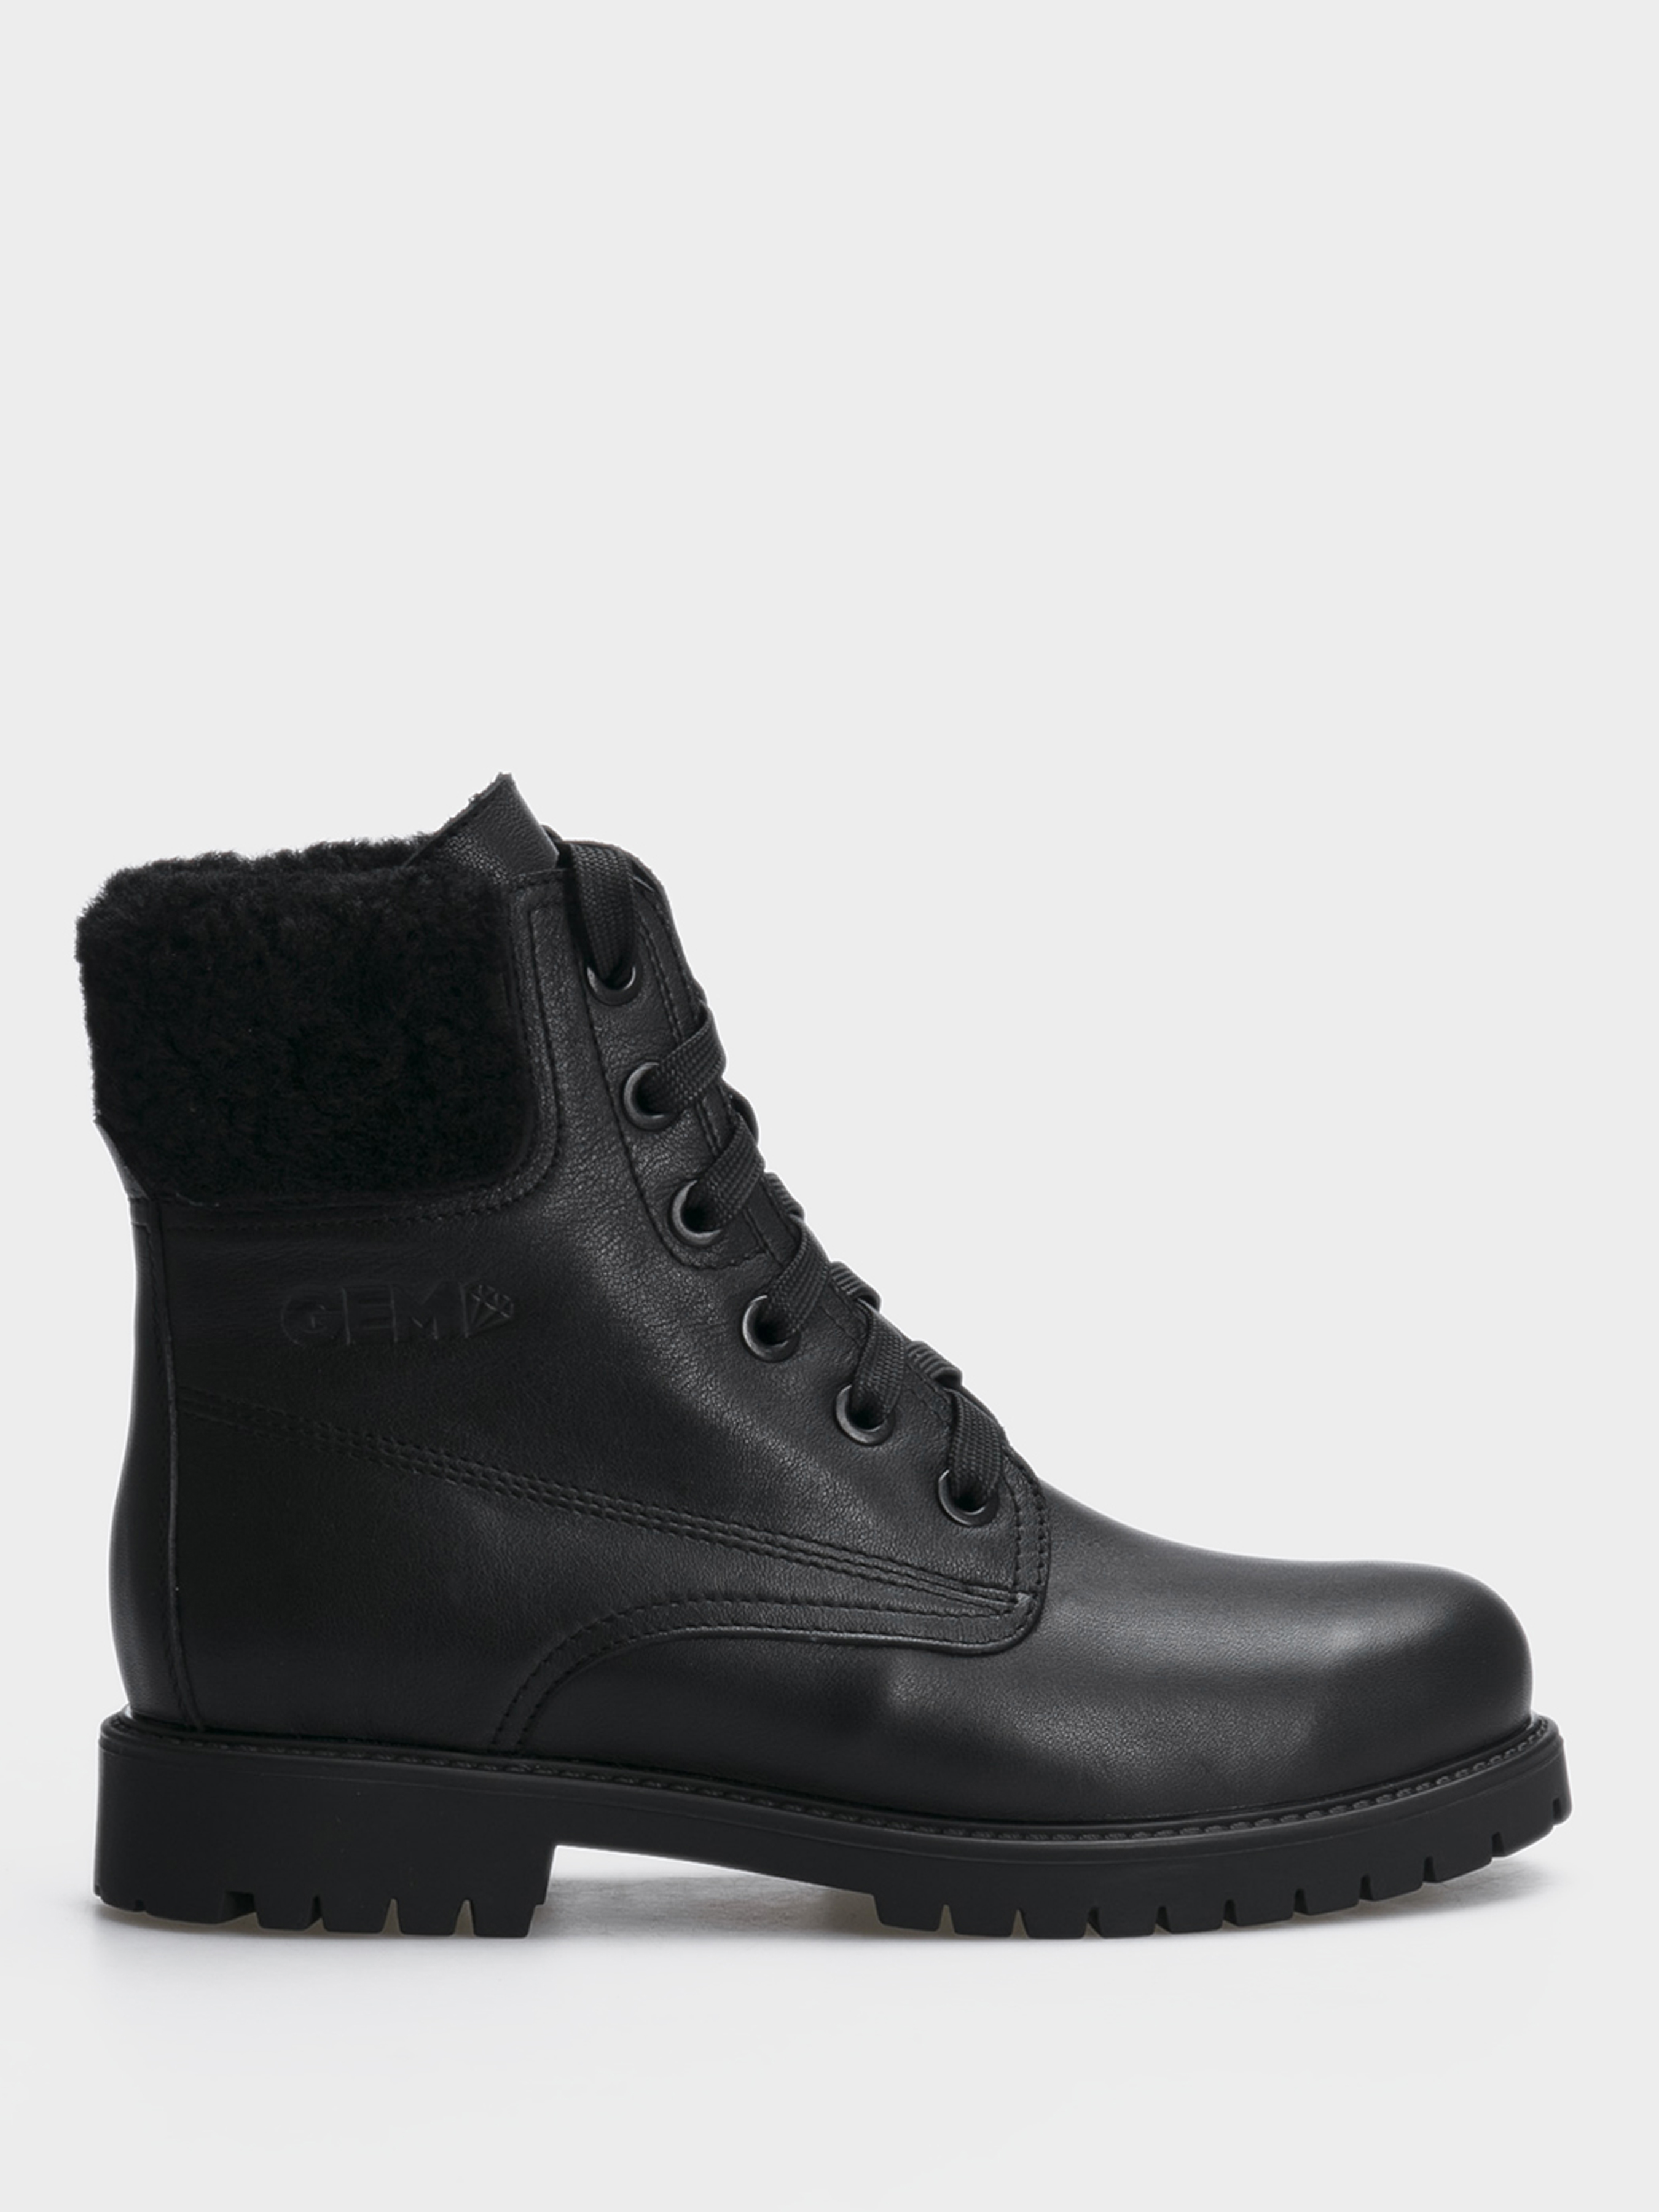 

Ботинки женские Gem 385-430, Чорний